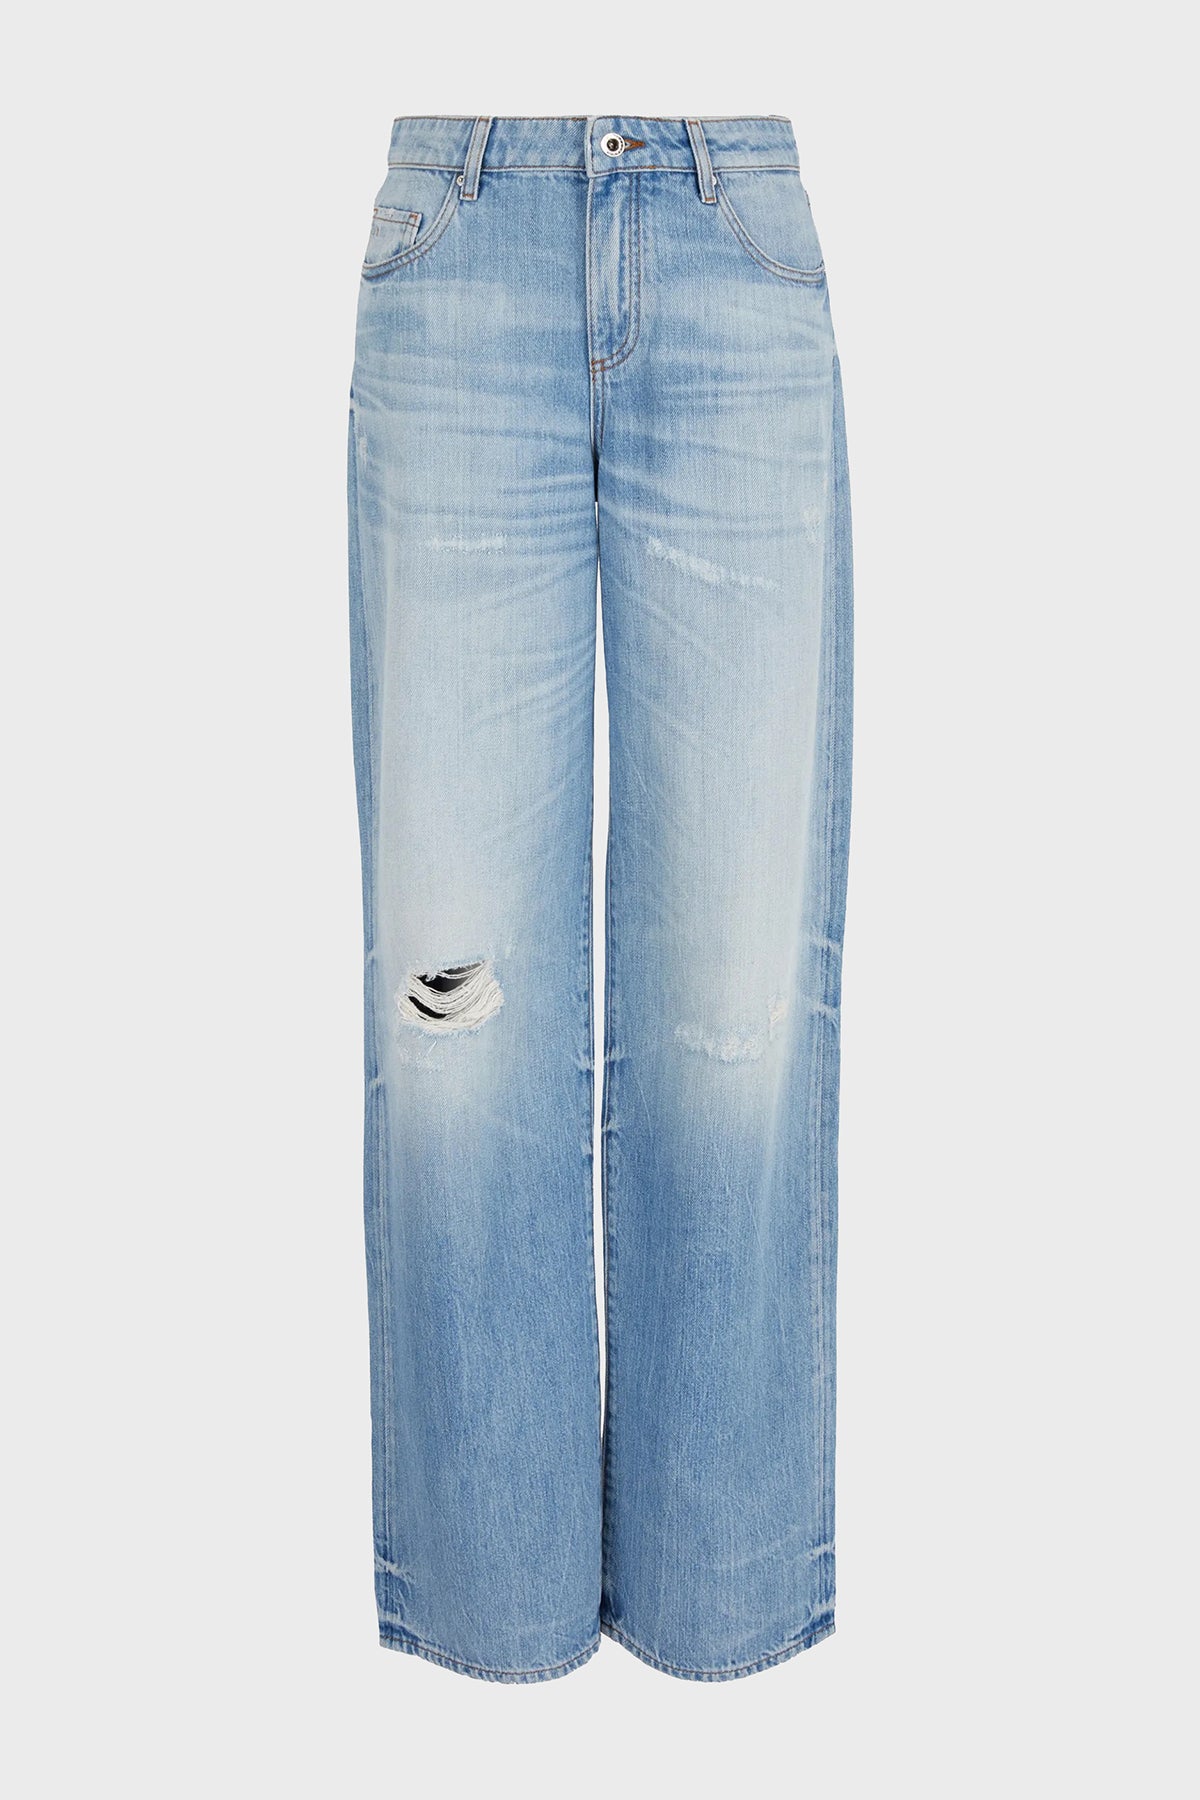 Armani Exchange donna jeans 3DYJ52 Y16GZ 05EL